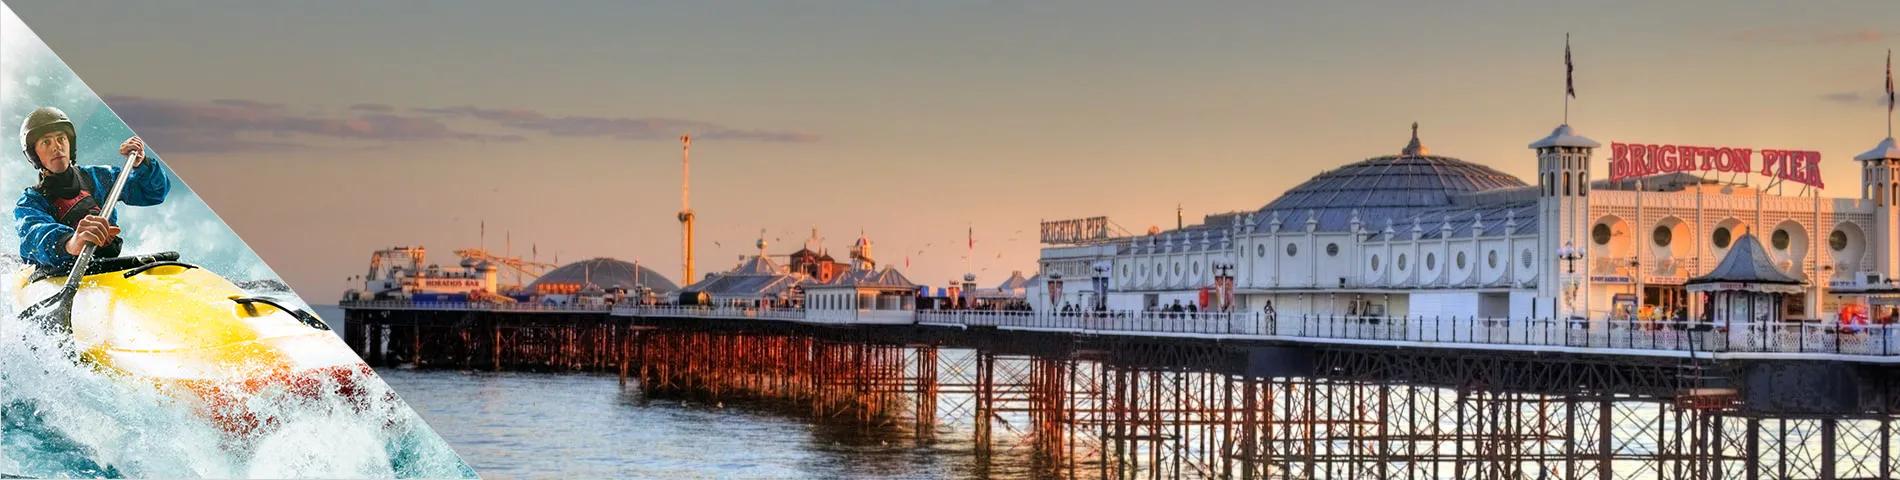 Brighton - Engels  & avontuurlijke sporten